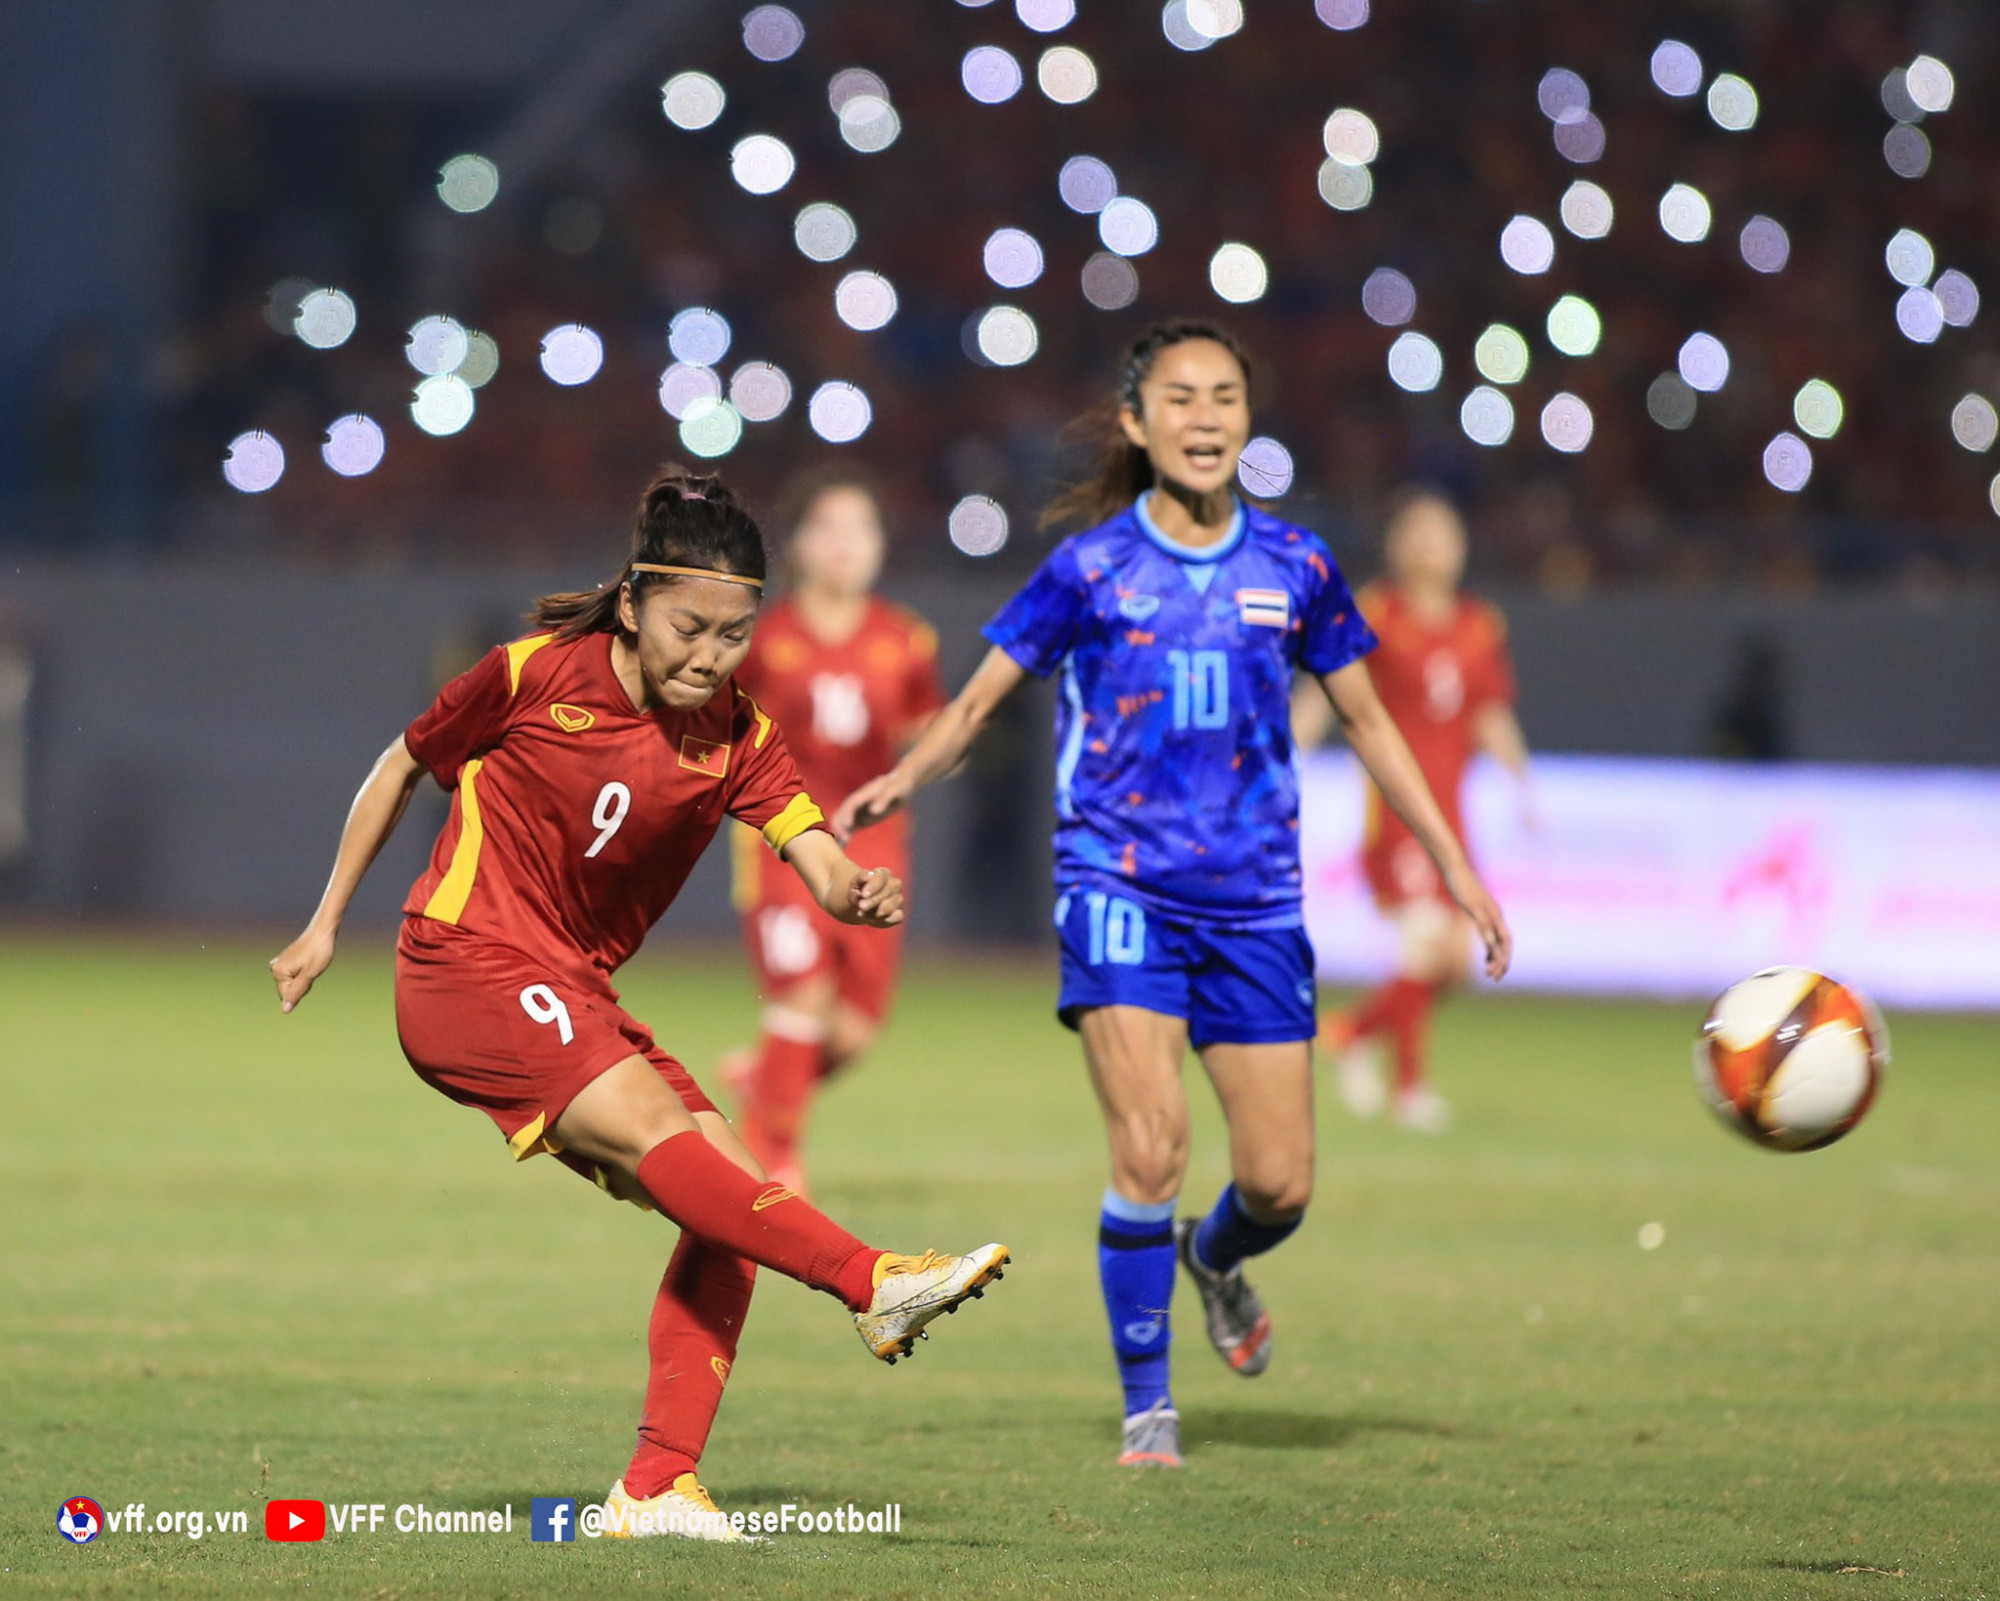 Không chỉ đoạt HC vàng SEA Games thứ ba liên tiếp, bóng đá nữ Việt Nam đã đăng quang bảy trong chín lần tổ chức gần nhất. Chiến thắng này khẳng định vị trí đầu tàu của tuyển nữ Việt Nam trong khu vực và tạo động lực cho họ trước lần đầu dự World Cup.